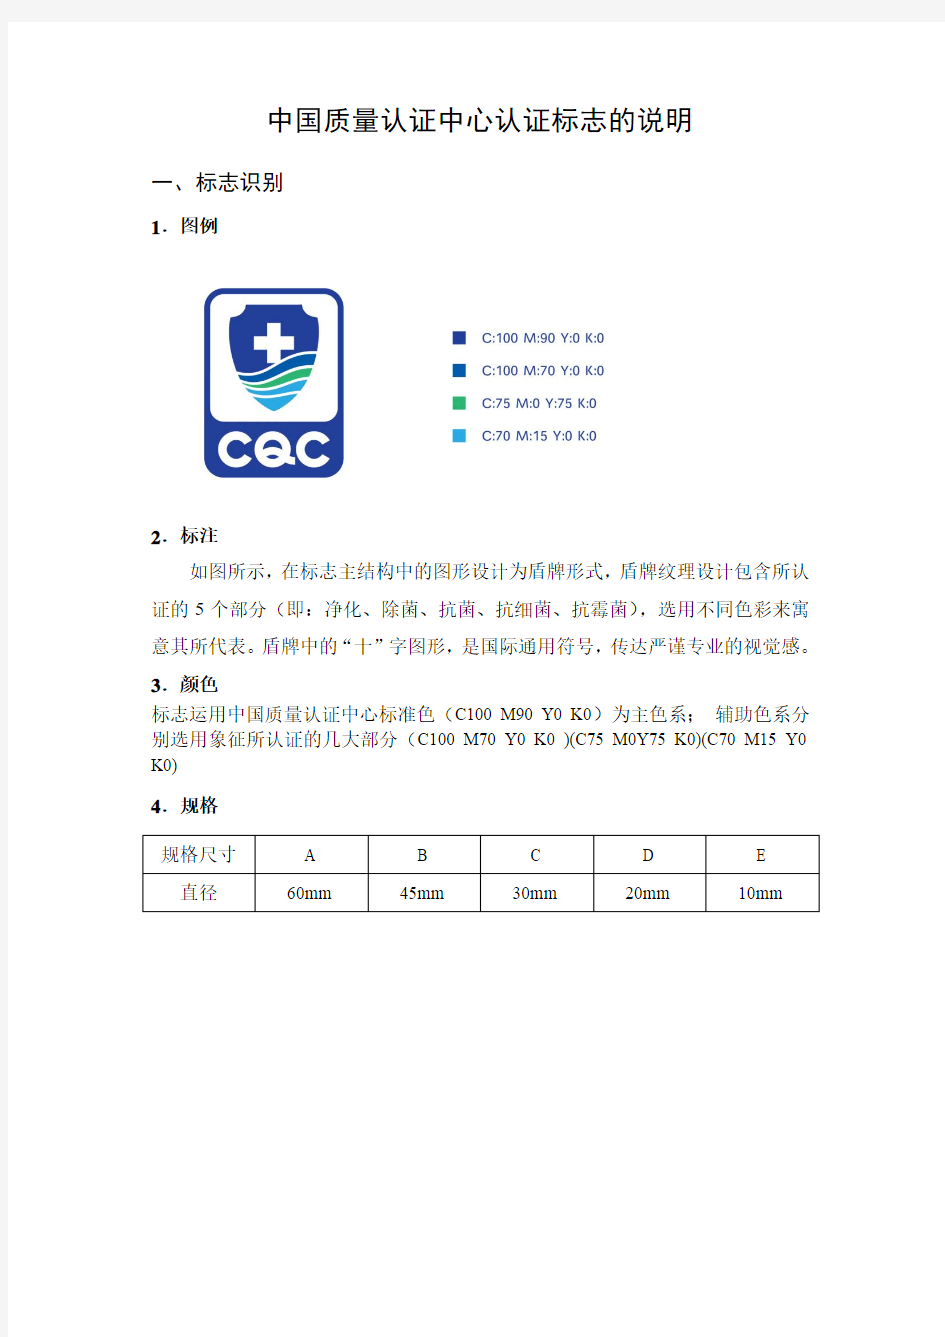 中国质量认证中心认证标志的说明